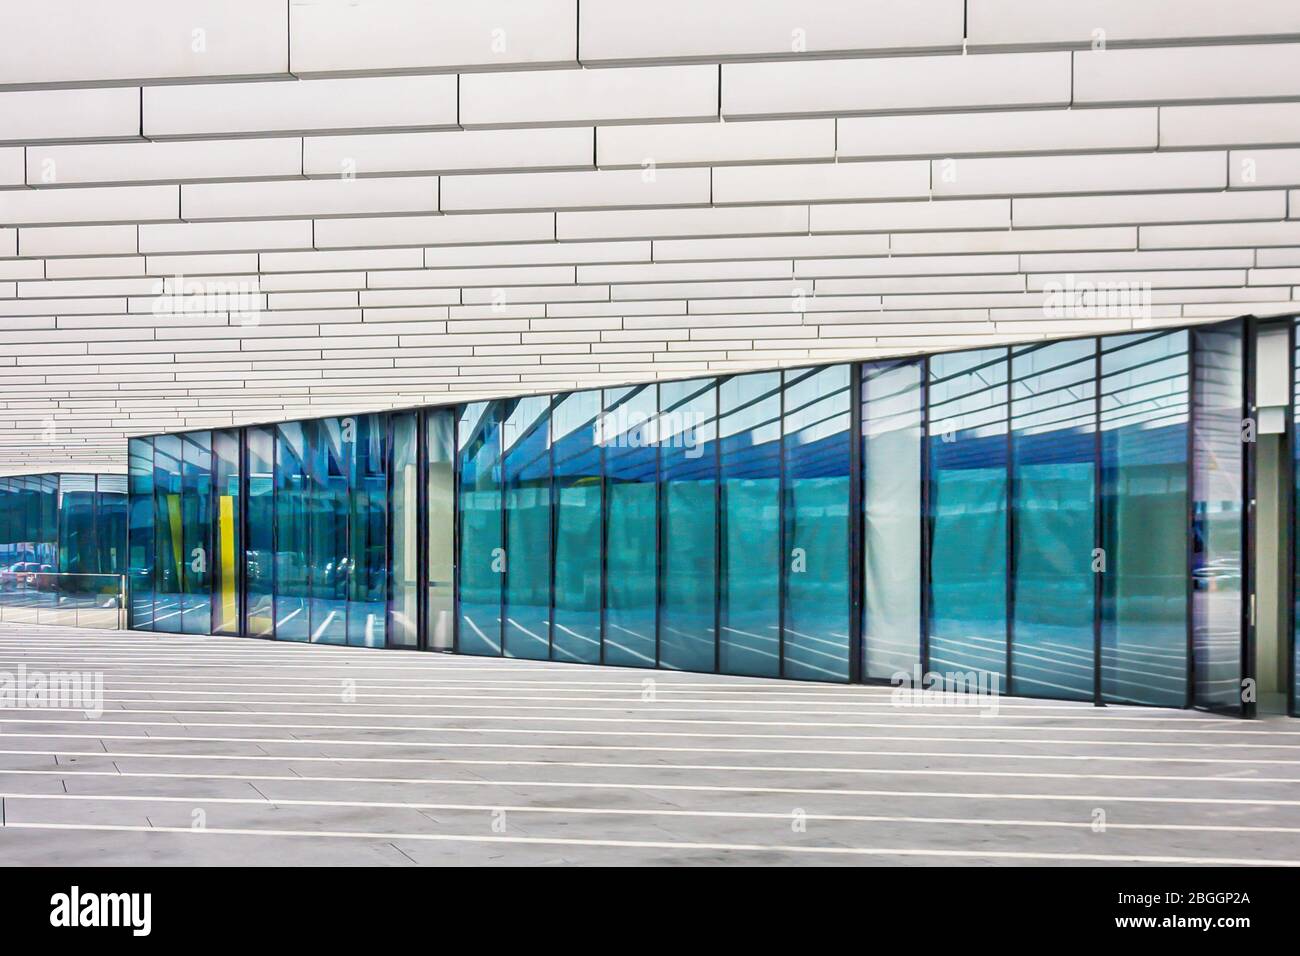 Lisbona, Portogallo. Novembre 25 2017. Architettura moderna EDP azienda energetica portoghese Foto Stock